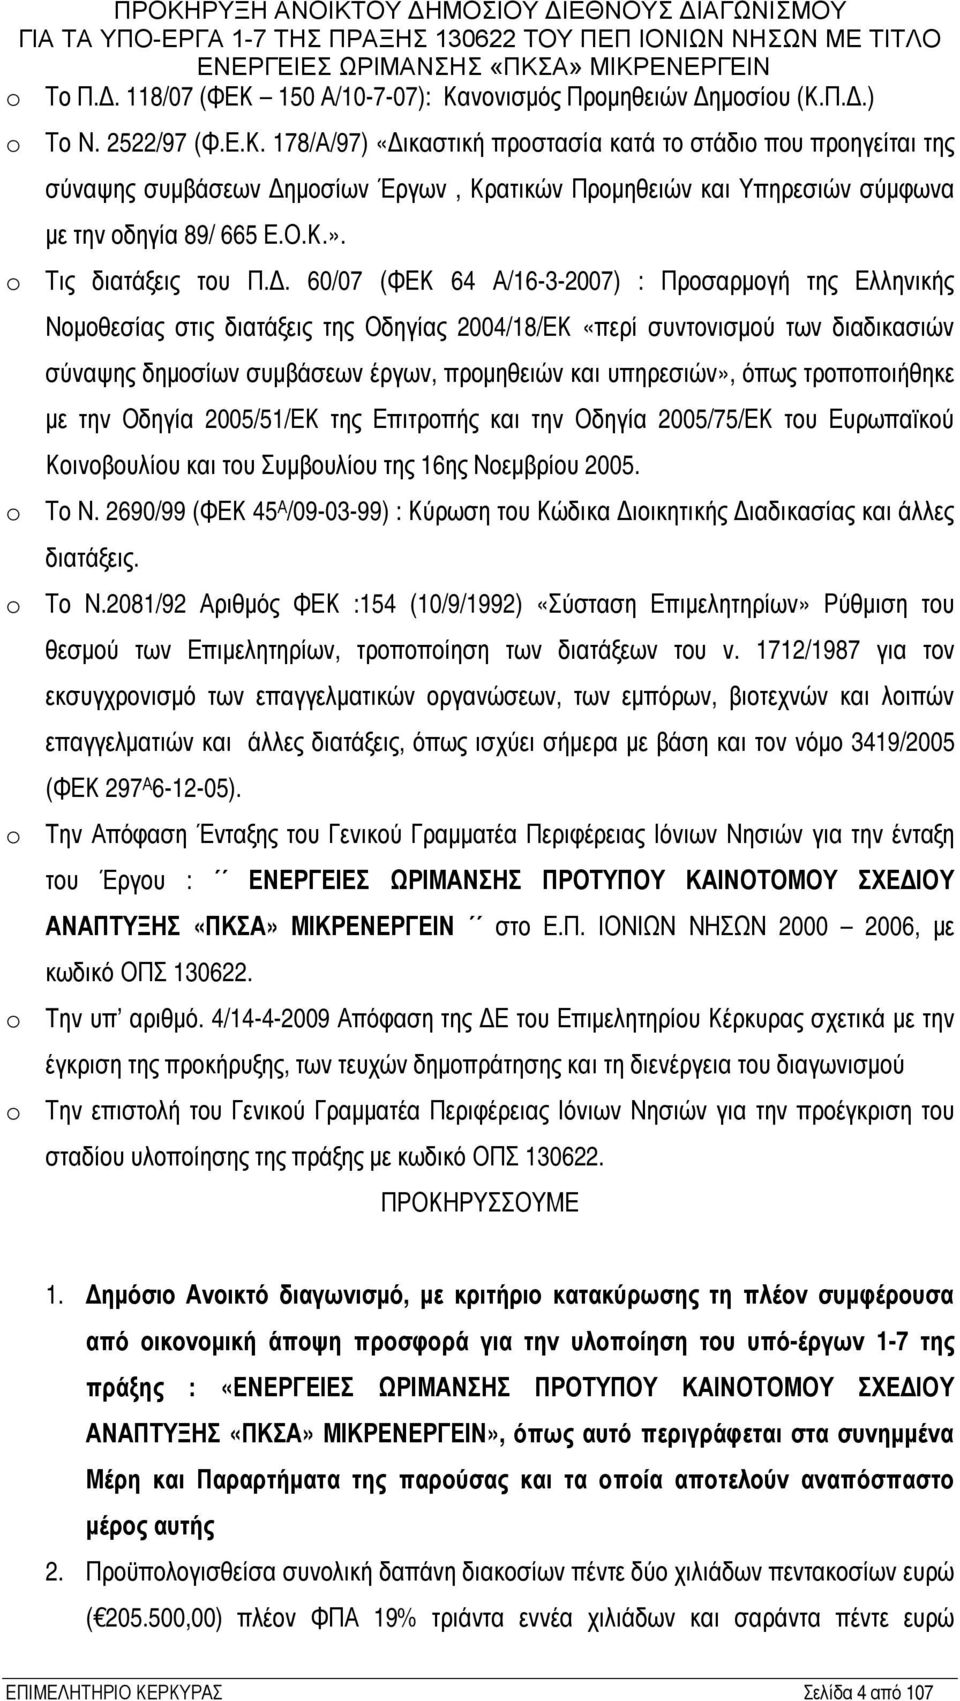 60/07 (ΦΕΚ 64 Α/16-3-2007) : Προσαρμογή της Ελληνικής Νομοθεσίας στις διατάξεις της Οδηγίας 2004/18/ΕΚ «περί συντονισμού των διαδικασιών σύναψης δημοσίων συμβάσεων έργων, προμηθειών και υπηρεσιών»,